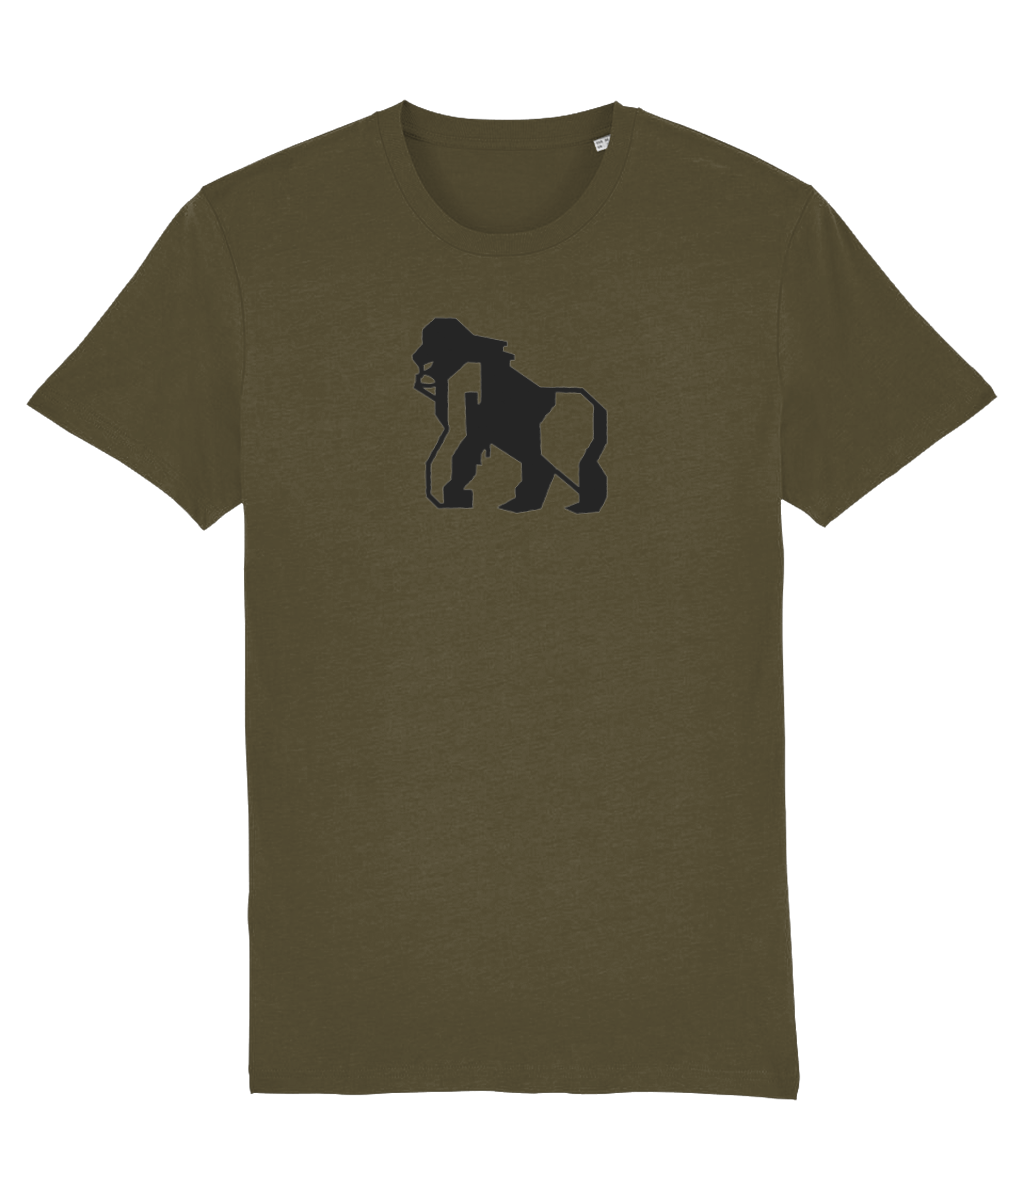 British Khaki Gorilla/Gayrilla Organic Cotton T-Shirt